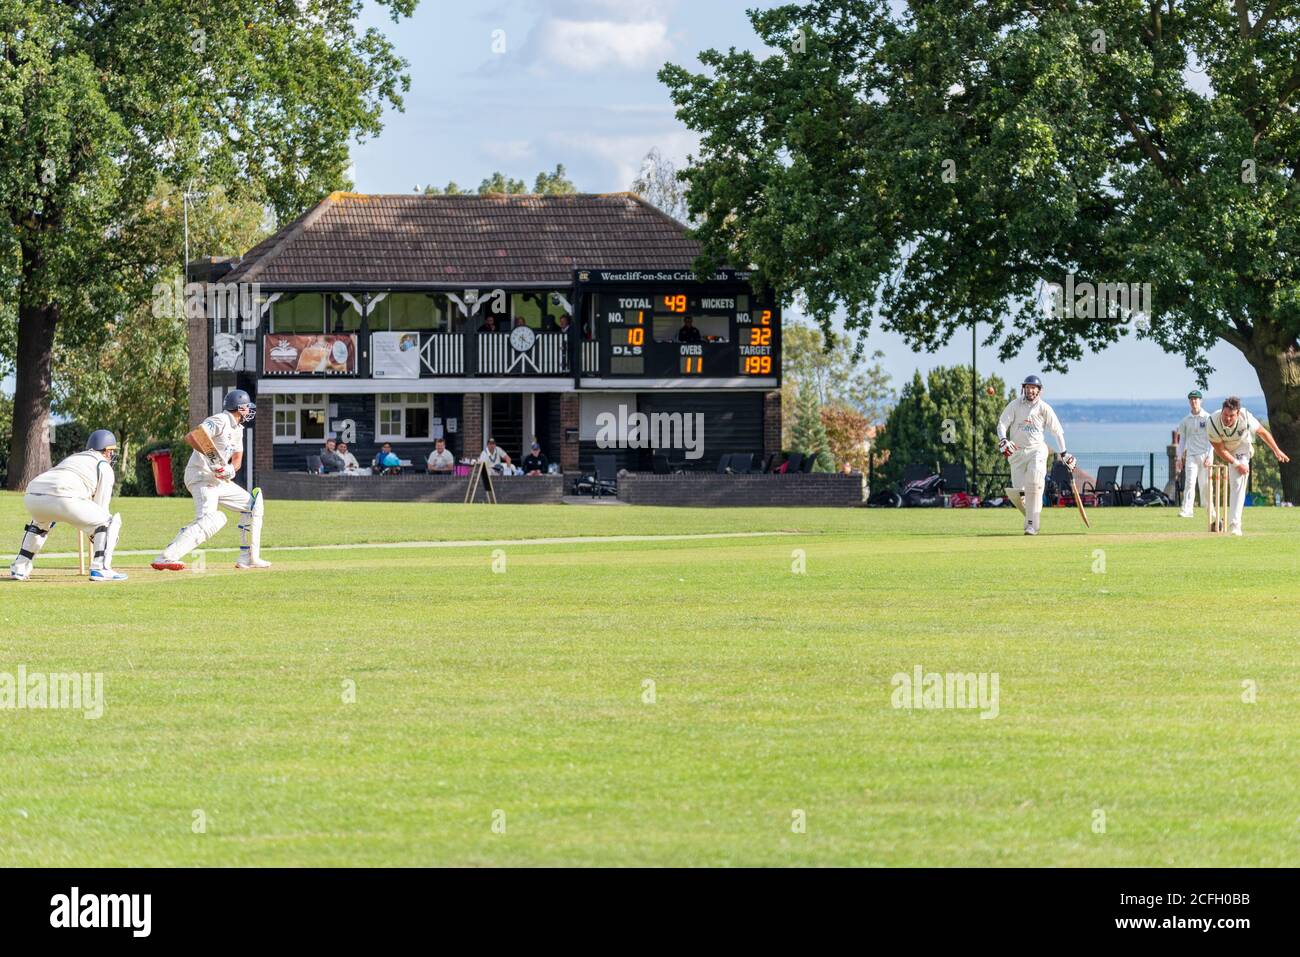 Le cricket se joue à Chalkwell Park, Westcliff on Sea, Southend, Essex,  Royaume-Uni. Westcliff on Sea Cricket Club jouant à Southend. Pavillon et  estuaire Photo Stock - Alamy